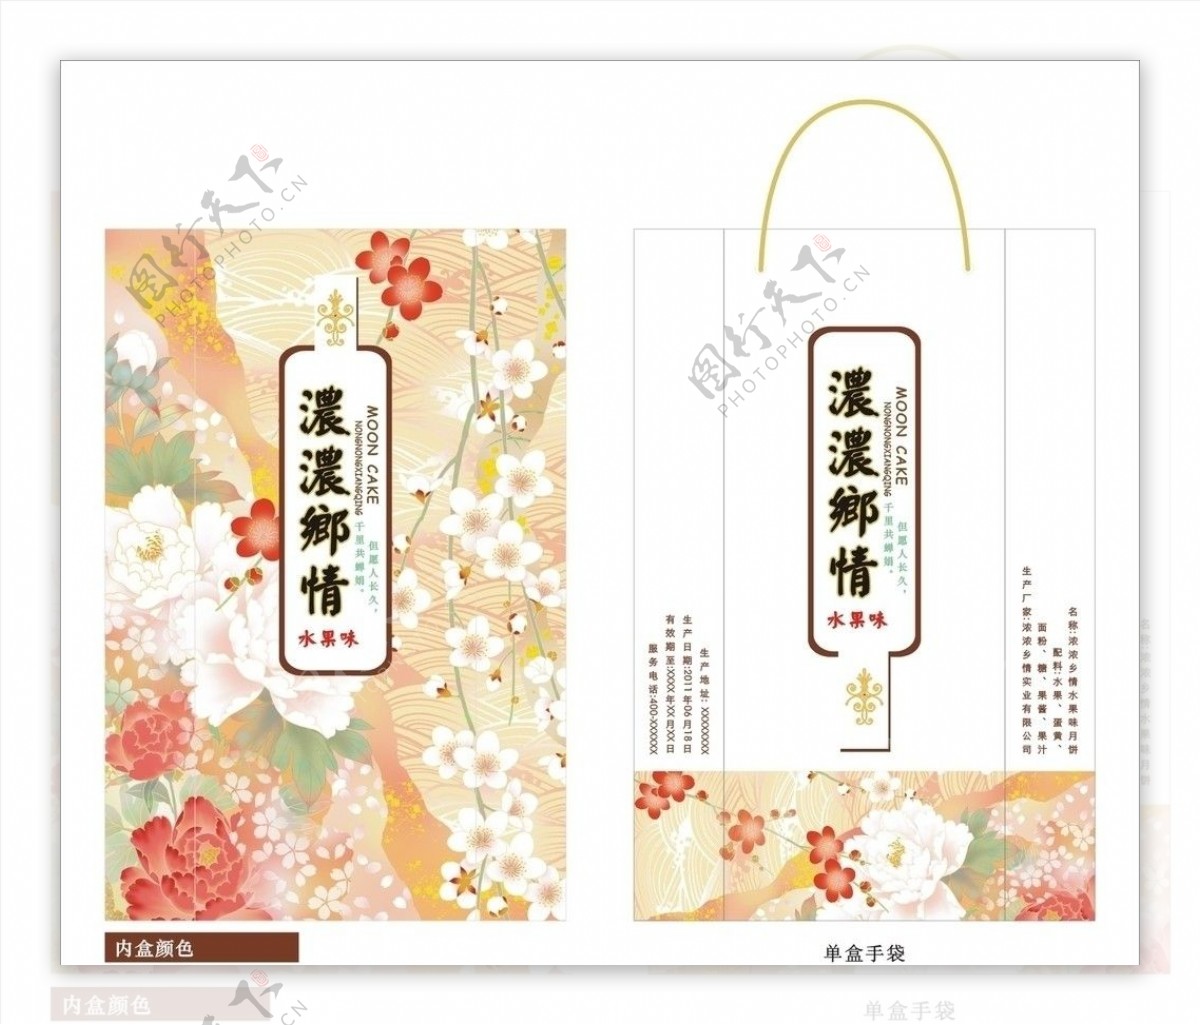 日式月饼包装花纹合层图片